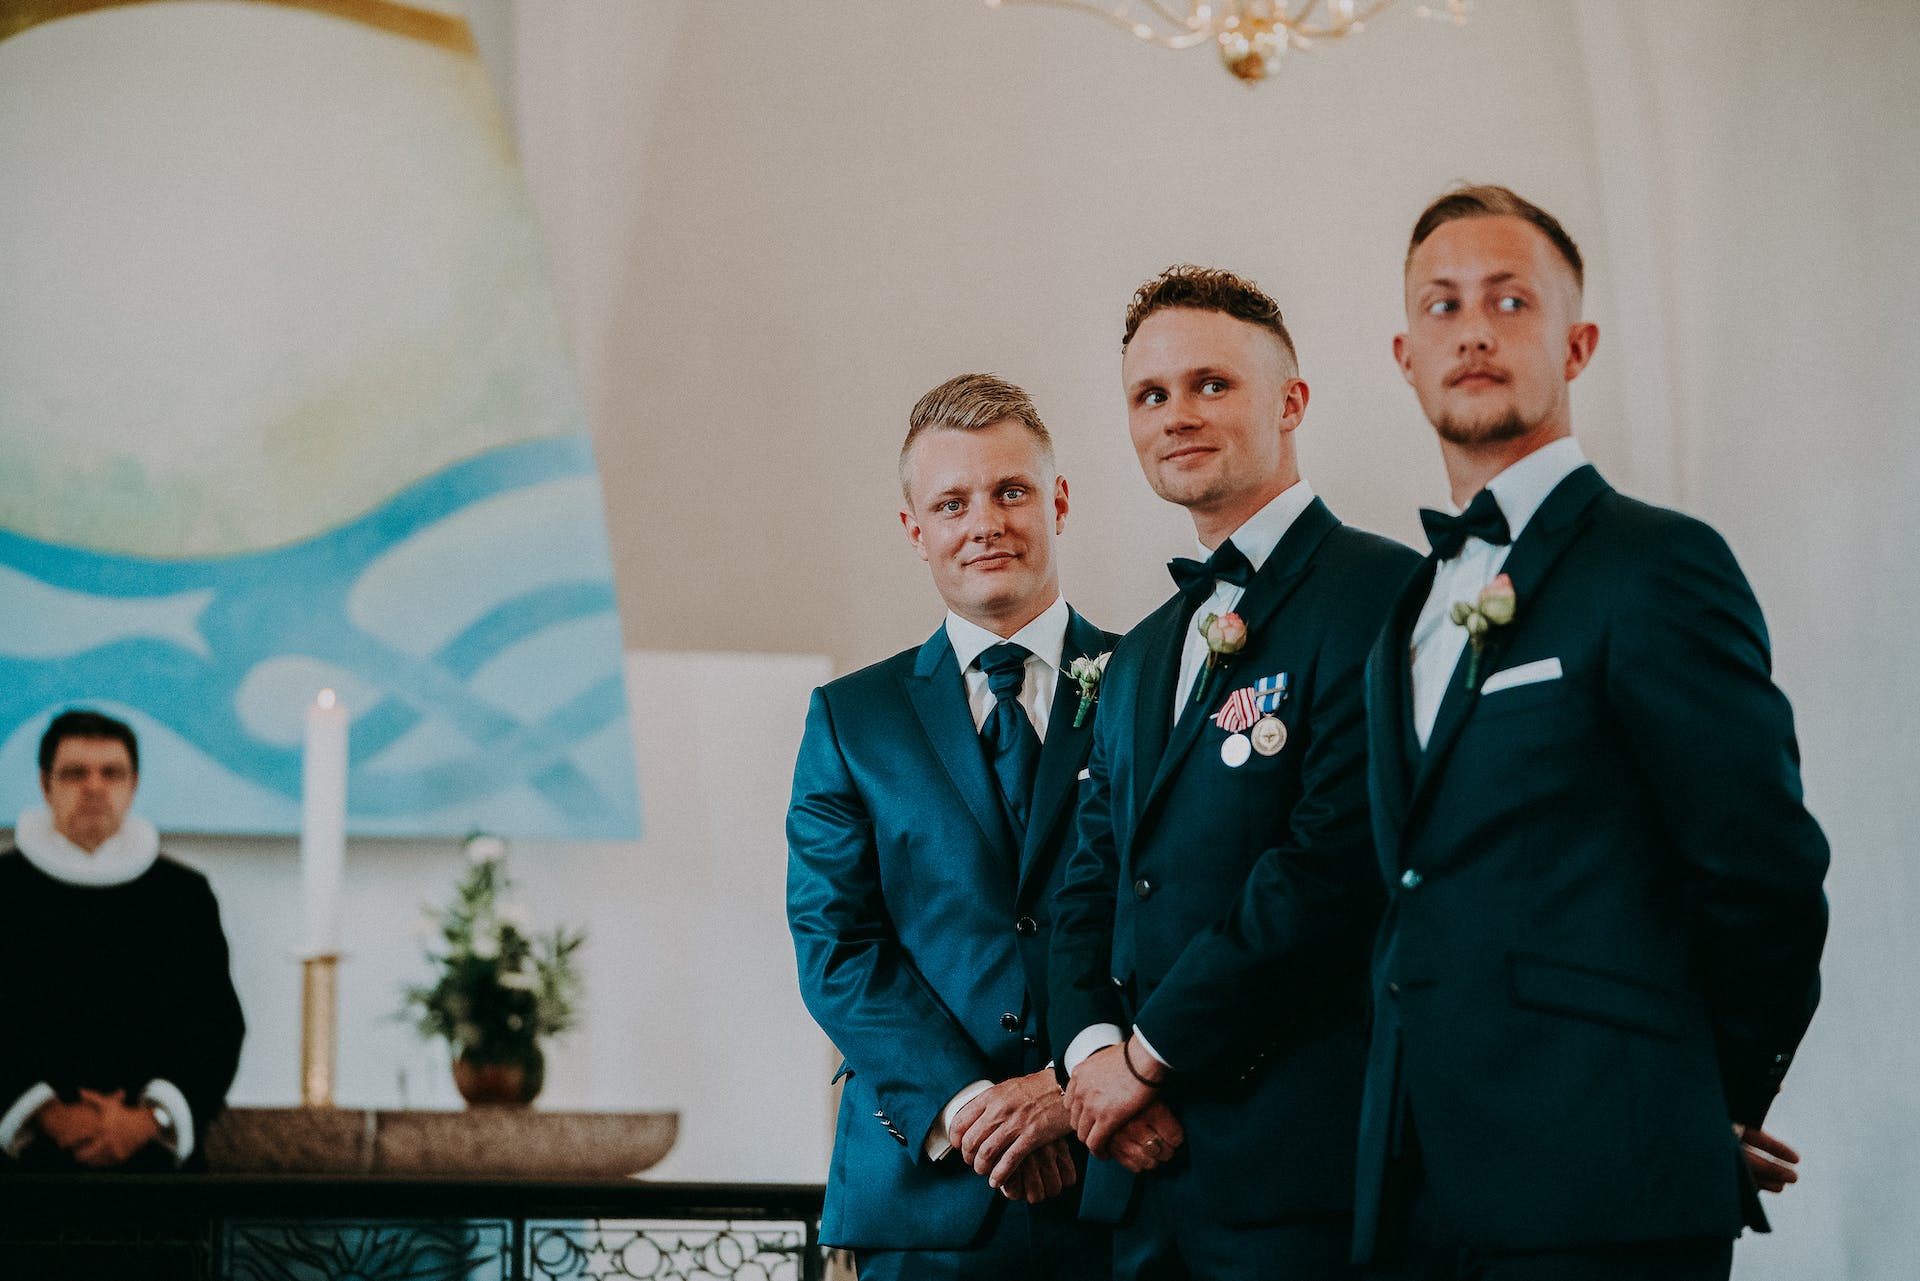 A group of groomsmen | Source: Pexels